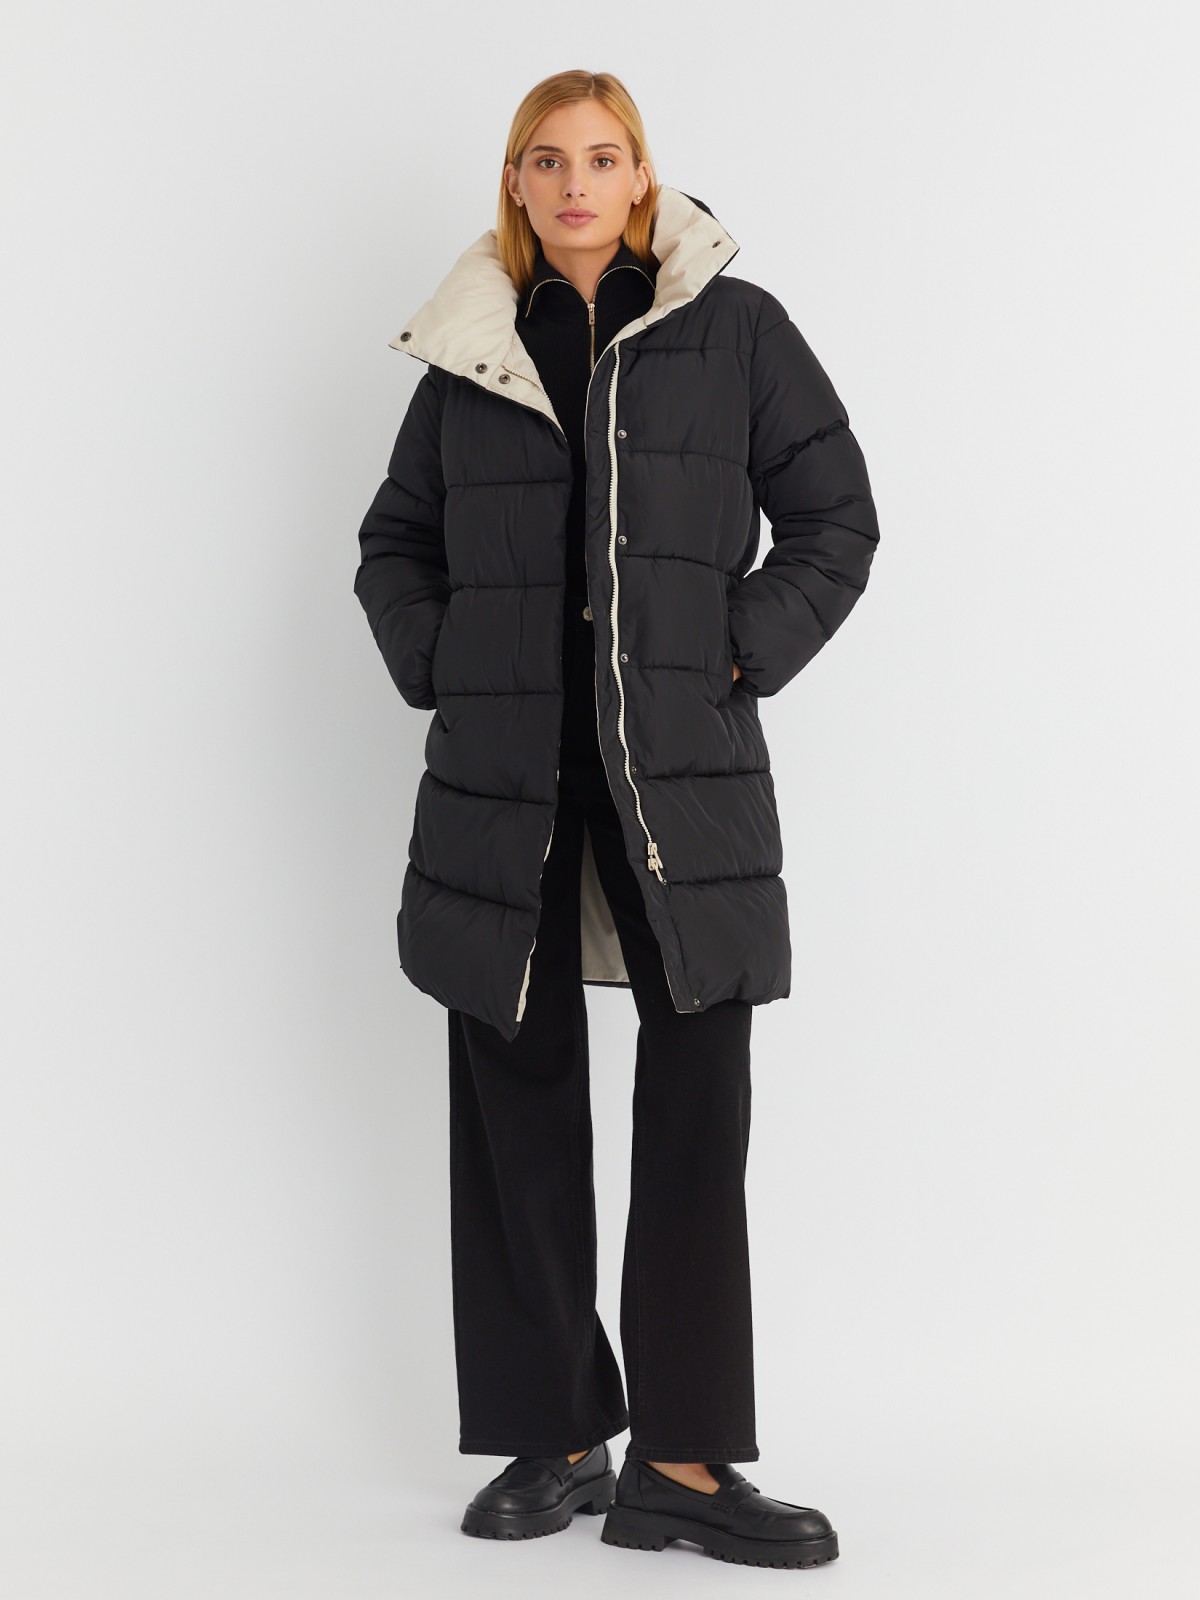 Тёплая стёганая куртка-пальто с высоким воротником zolla 023345202084, цвет черный, размер XS - фото 2